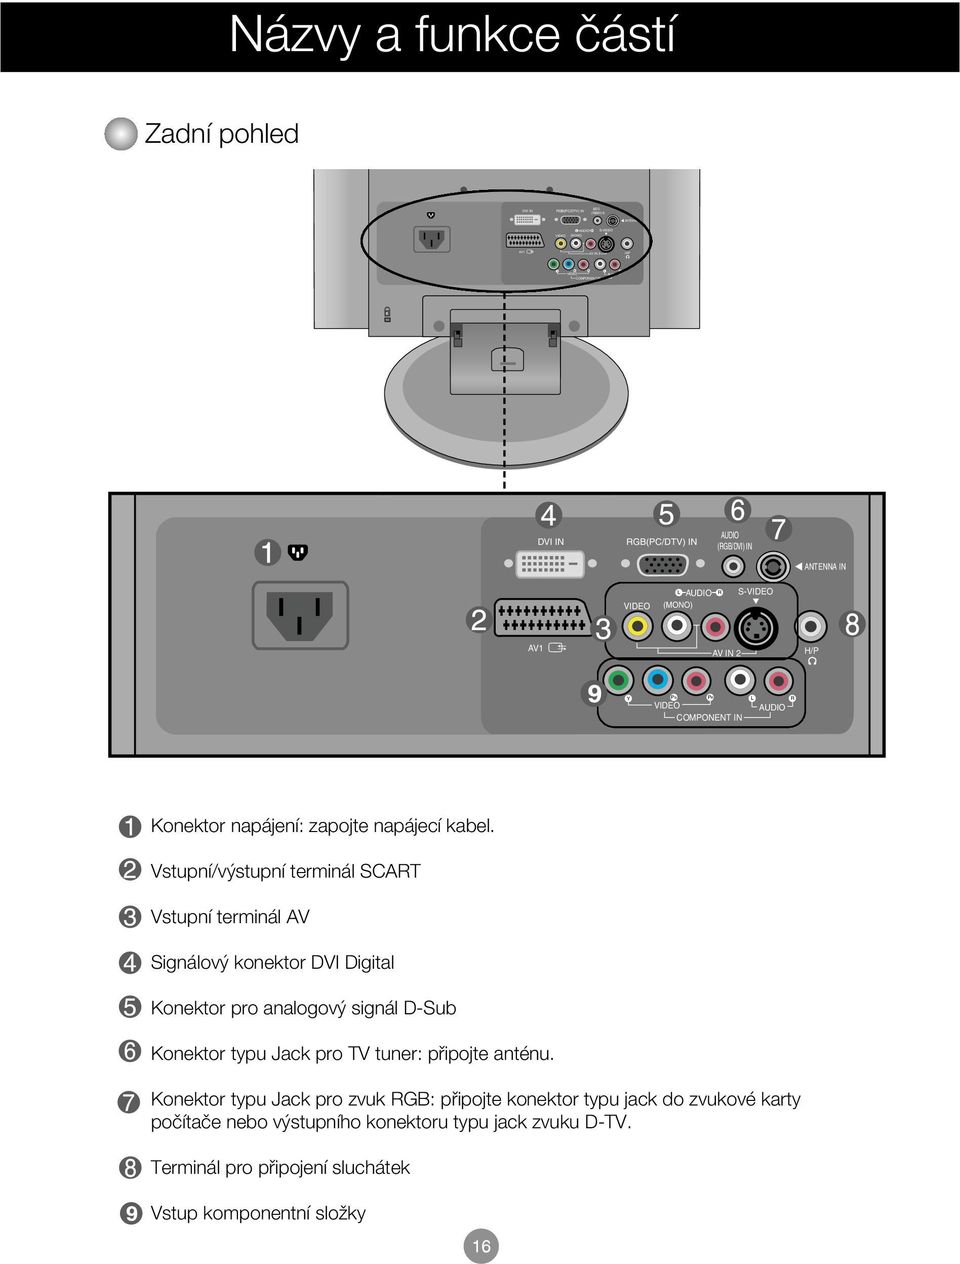 Vstupní/v stupní terminál SCART Vstupní terminál AV Signálov konektor DVI Digital Konektor pro analogov signál D-Sub Konektor typu Jack pro TV tuner: pfiipojte